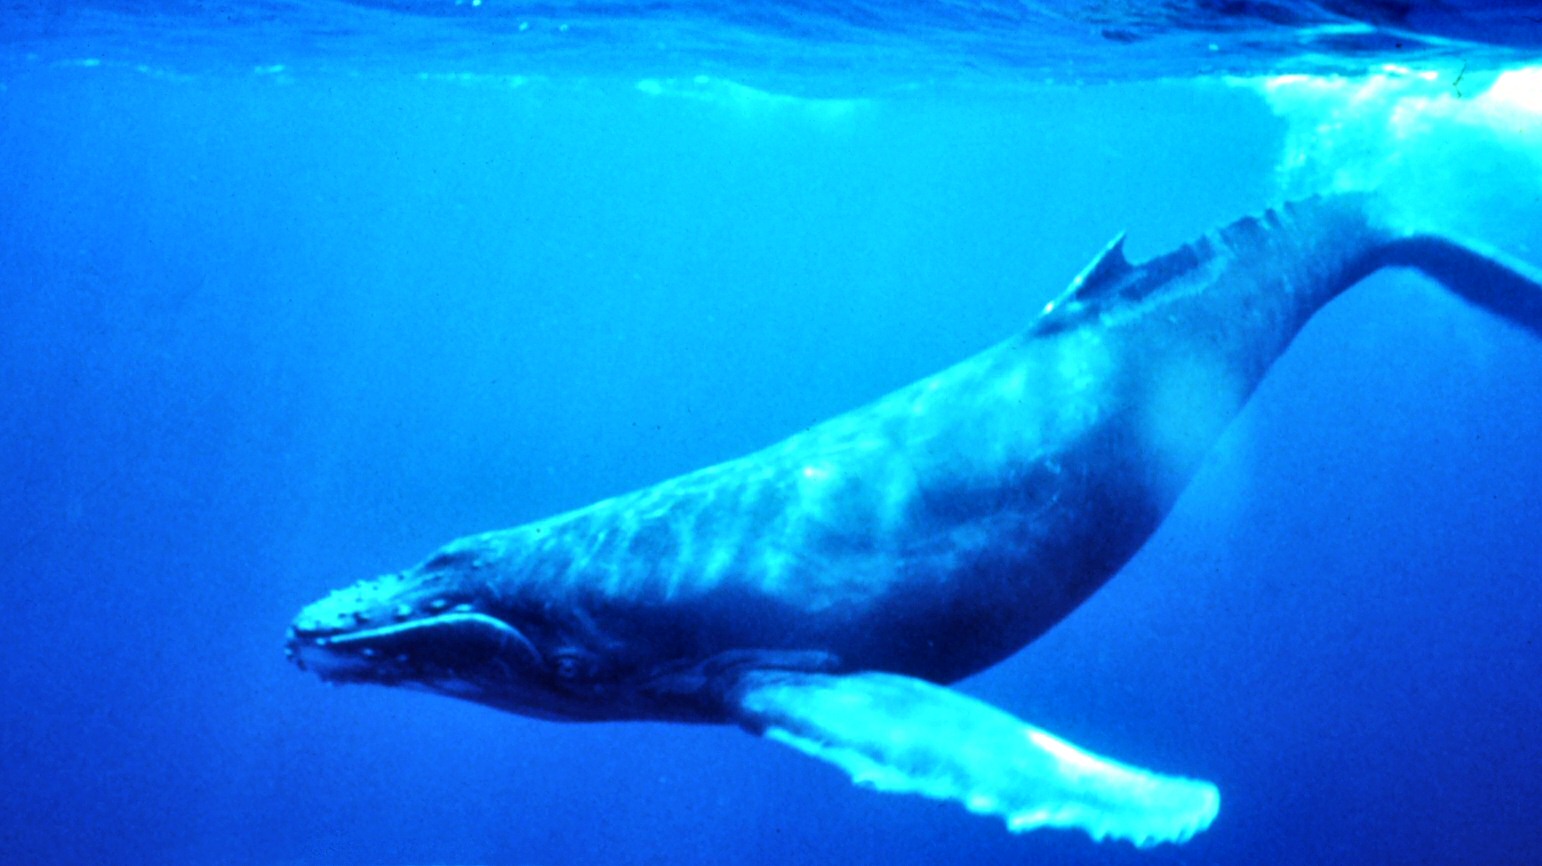 צילום תת-מימי של לווייתן, באדיבות ויקיפדיה